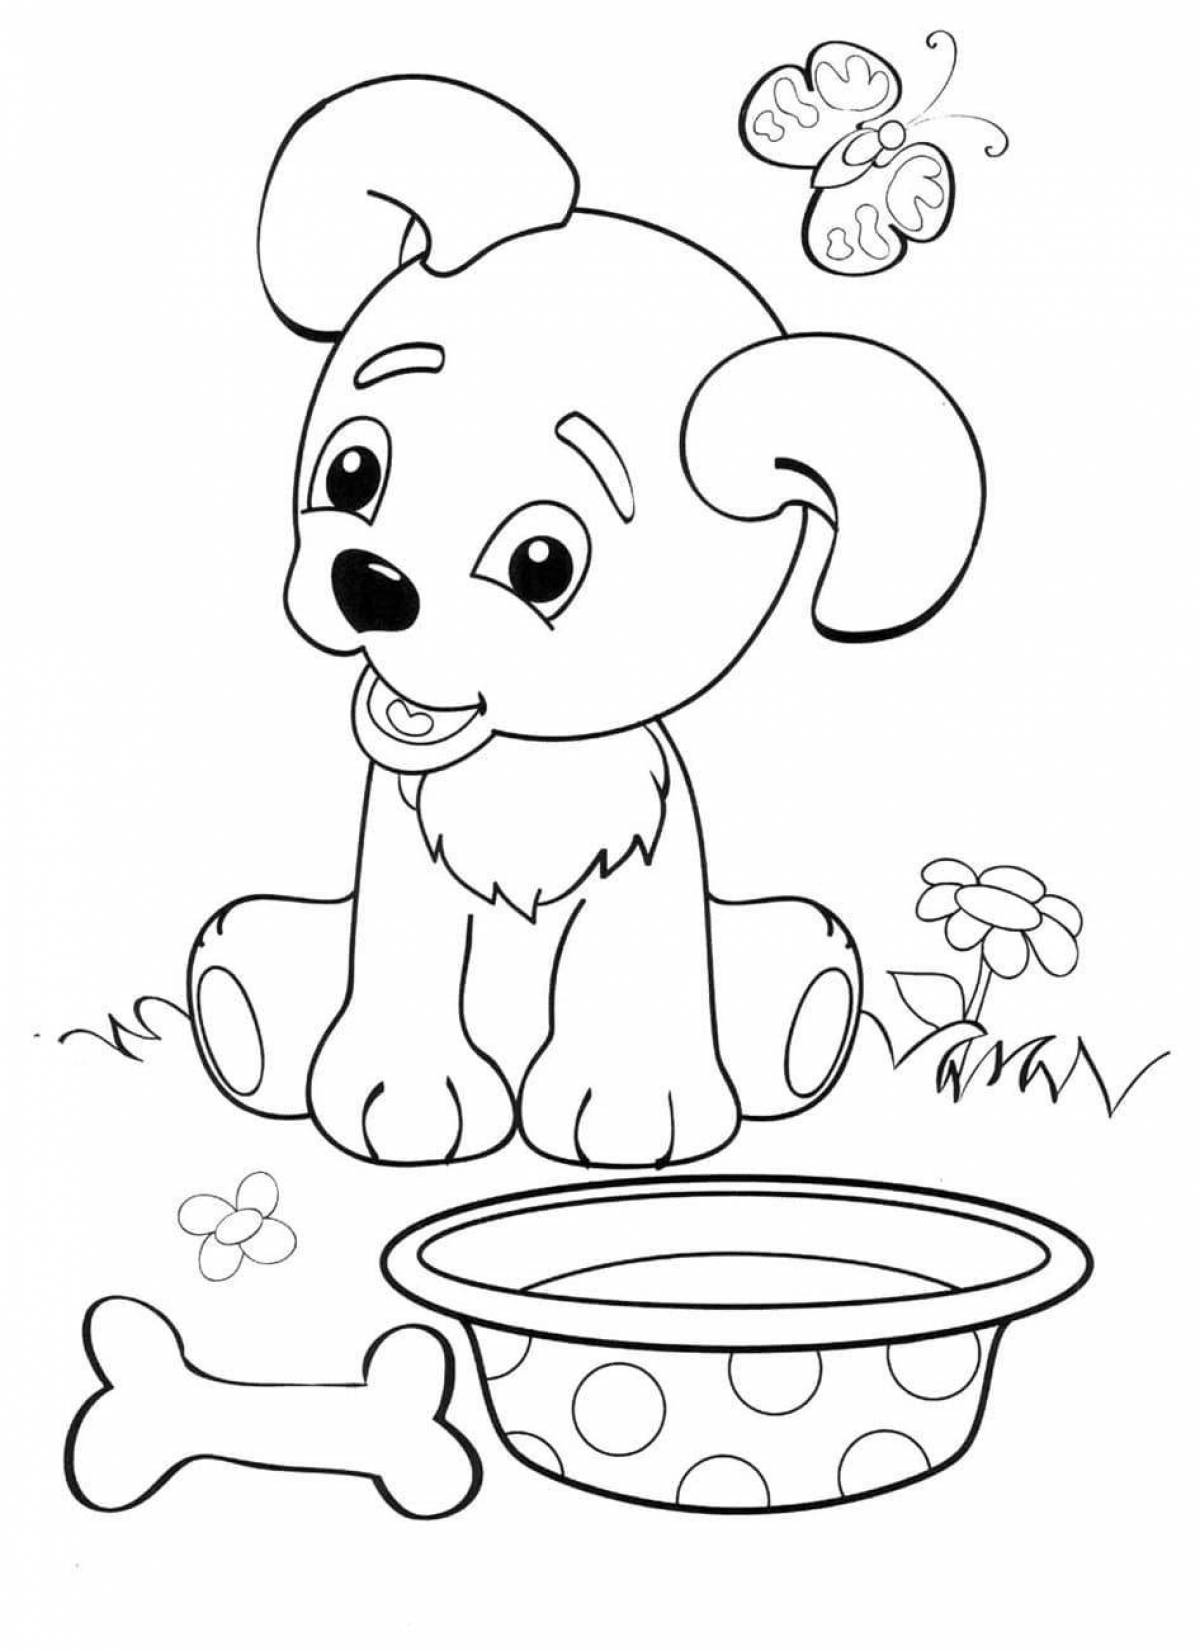 Собака - раскраска для детей бесплатно распечатать картинки | Раскраски, Контурные рисунки, Рисунки